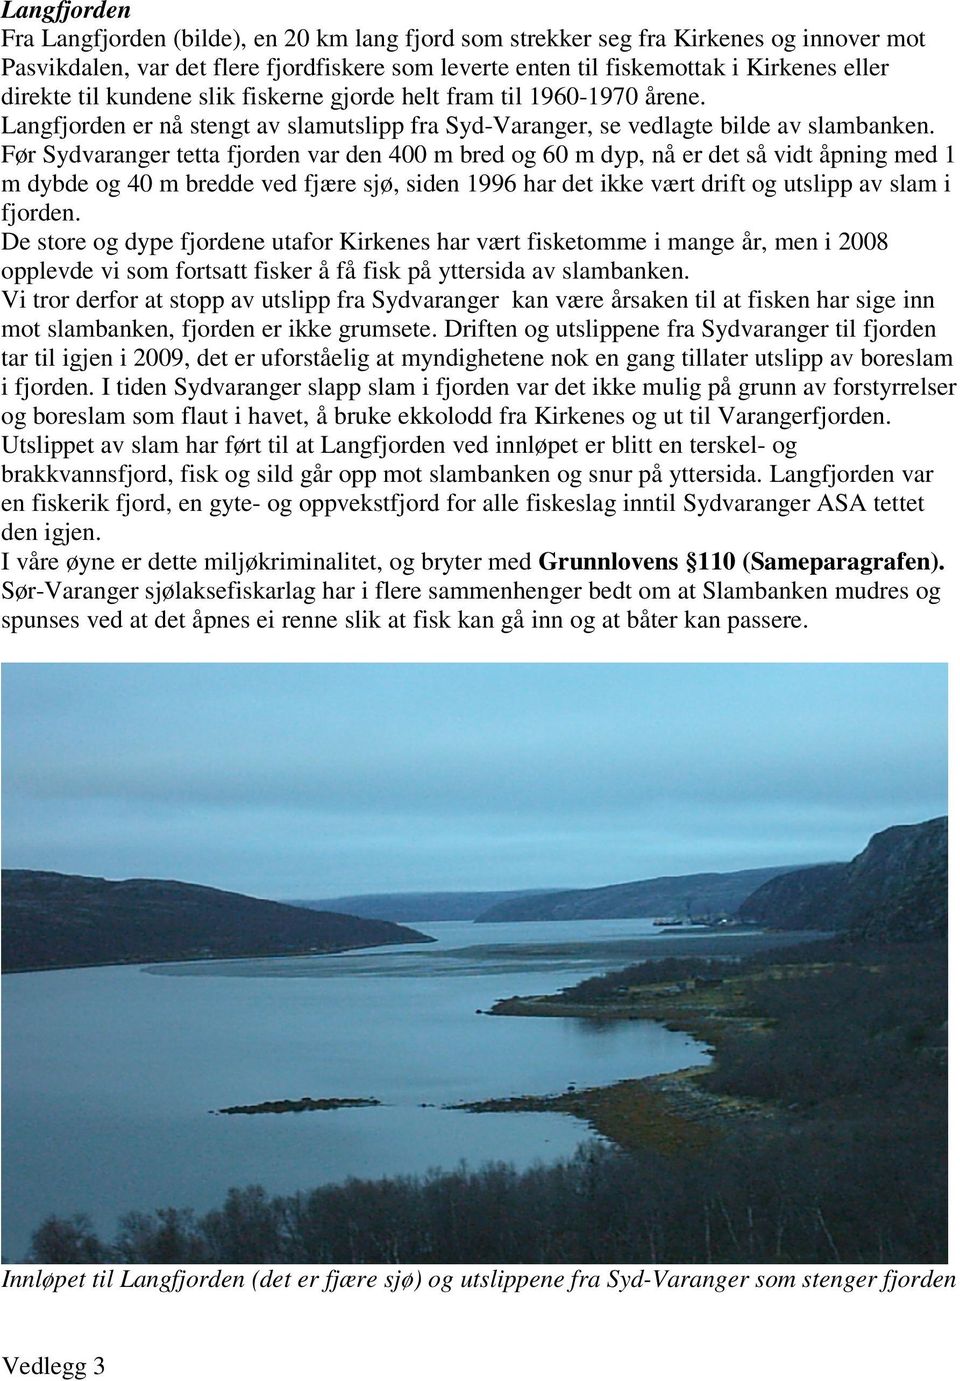 Før Sydvaranger tetta fjorden var den 400 m bred og 60 m dyp, nå er det så vidt åpning med 1 m dybde og 40 m bredde ved fjære sjø, siden 1996 har det ikke vært drift og utslipp av slam i fjorden.